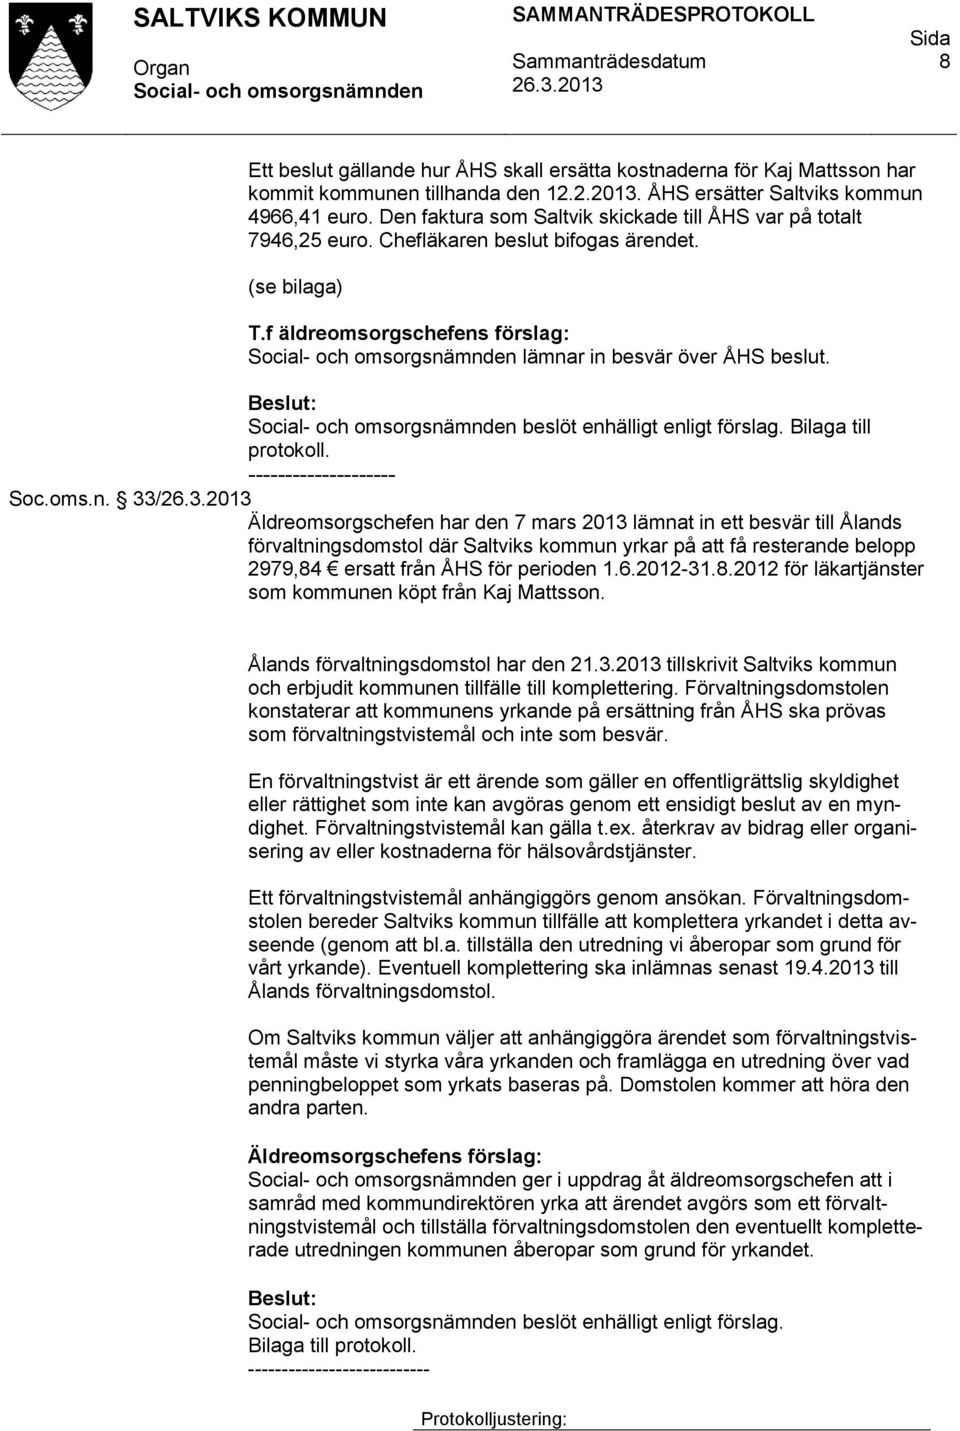 beslöt enhälligt enligt förslag. Bilaga till protokoll. -------------------- Soc.oms.n. 33/ Äldreomsorgschefen har den 7 mars 2013 lämnat in ett besvär till Ålands förvaltningsdomstol där Saltviks kommun yrkar på att få resterande belopp 2979,84 ersatt från ÅHS för perioden 1.